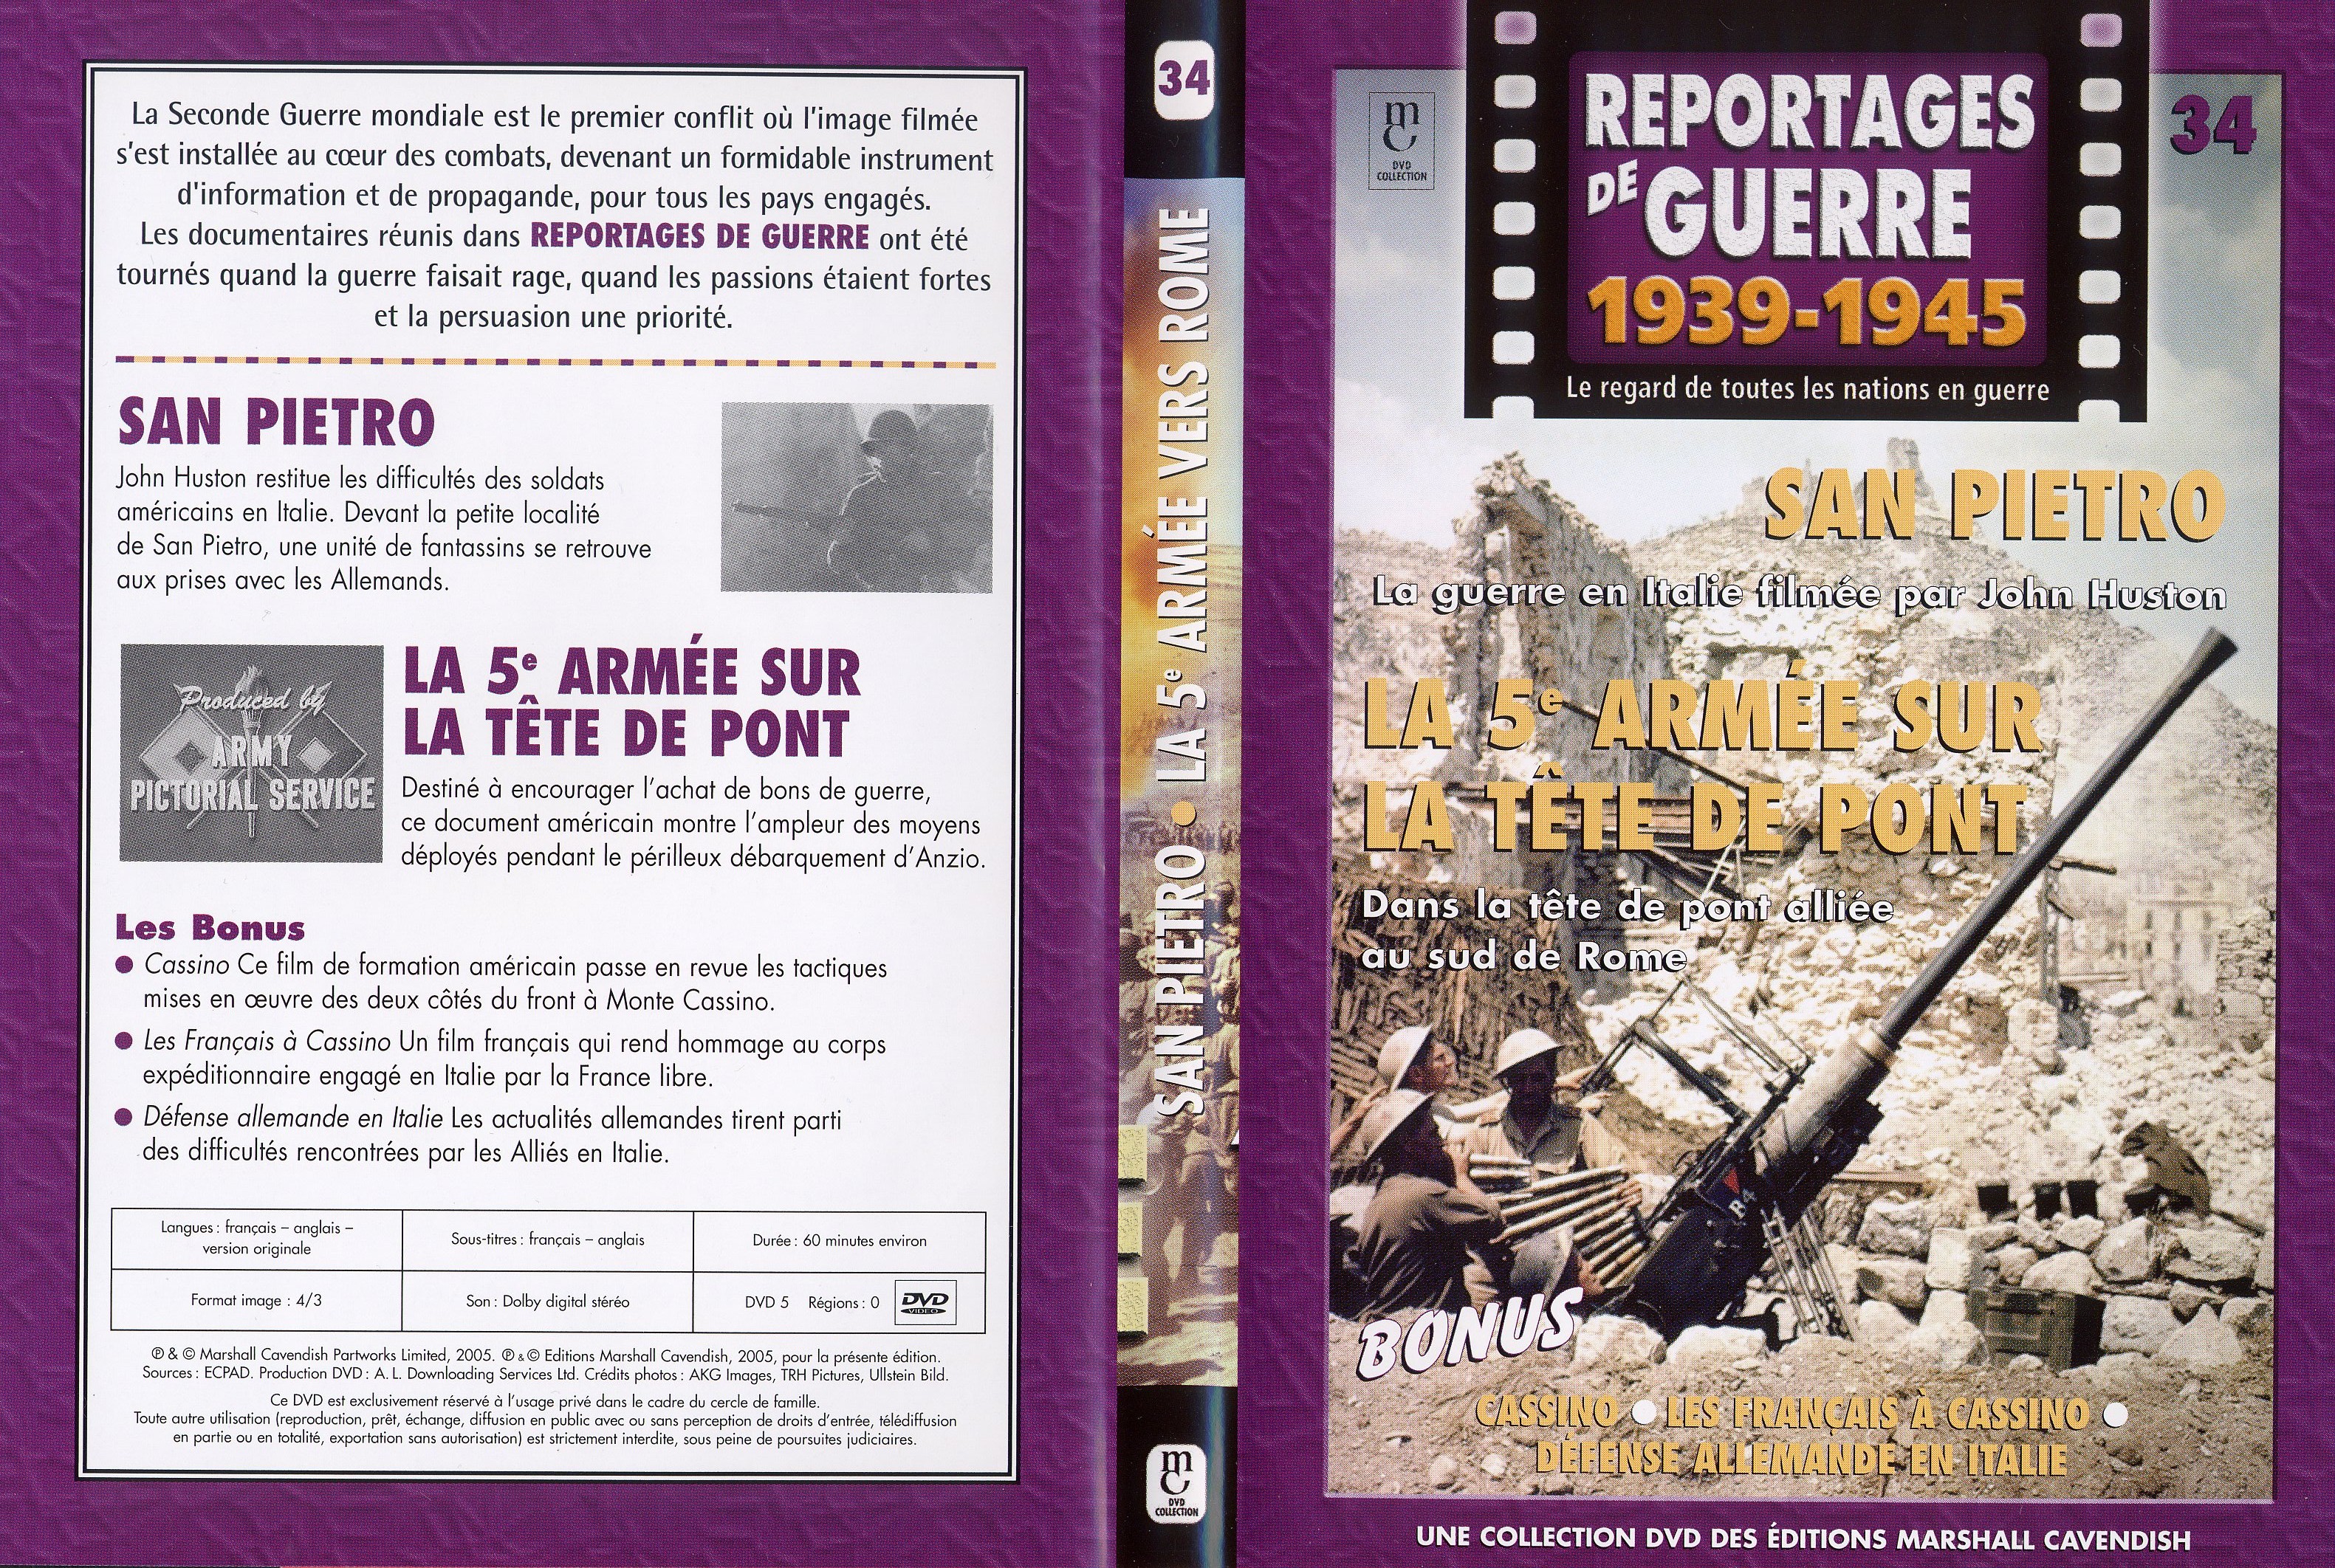 Jaquette DVD Reportages de guerre vol 34